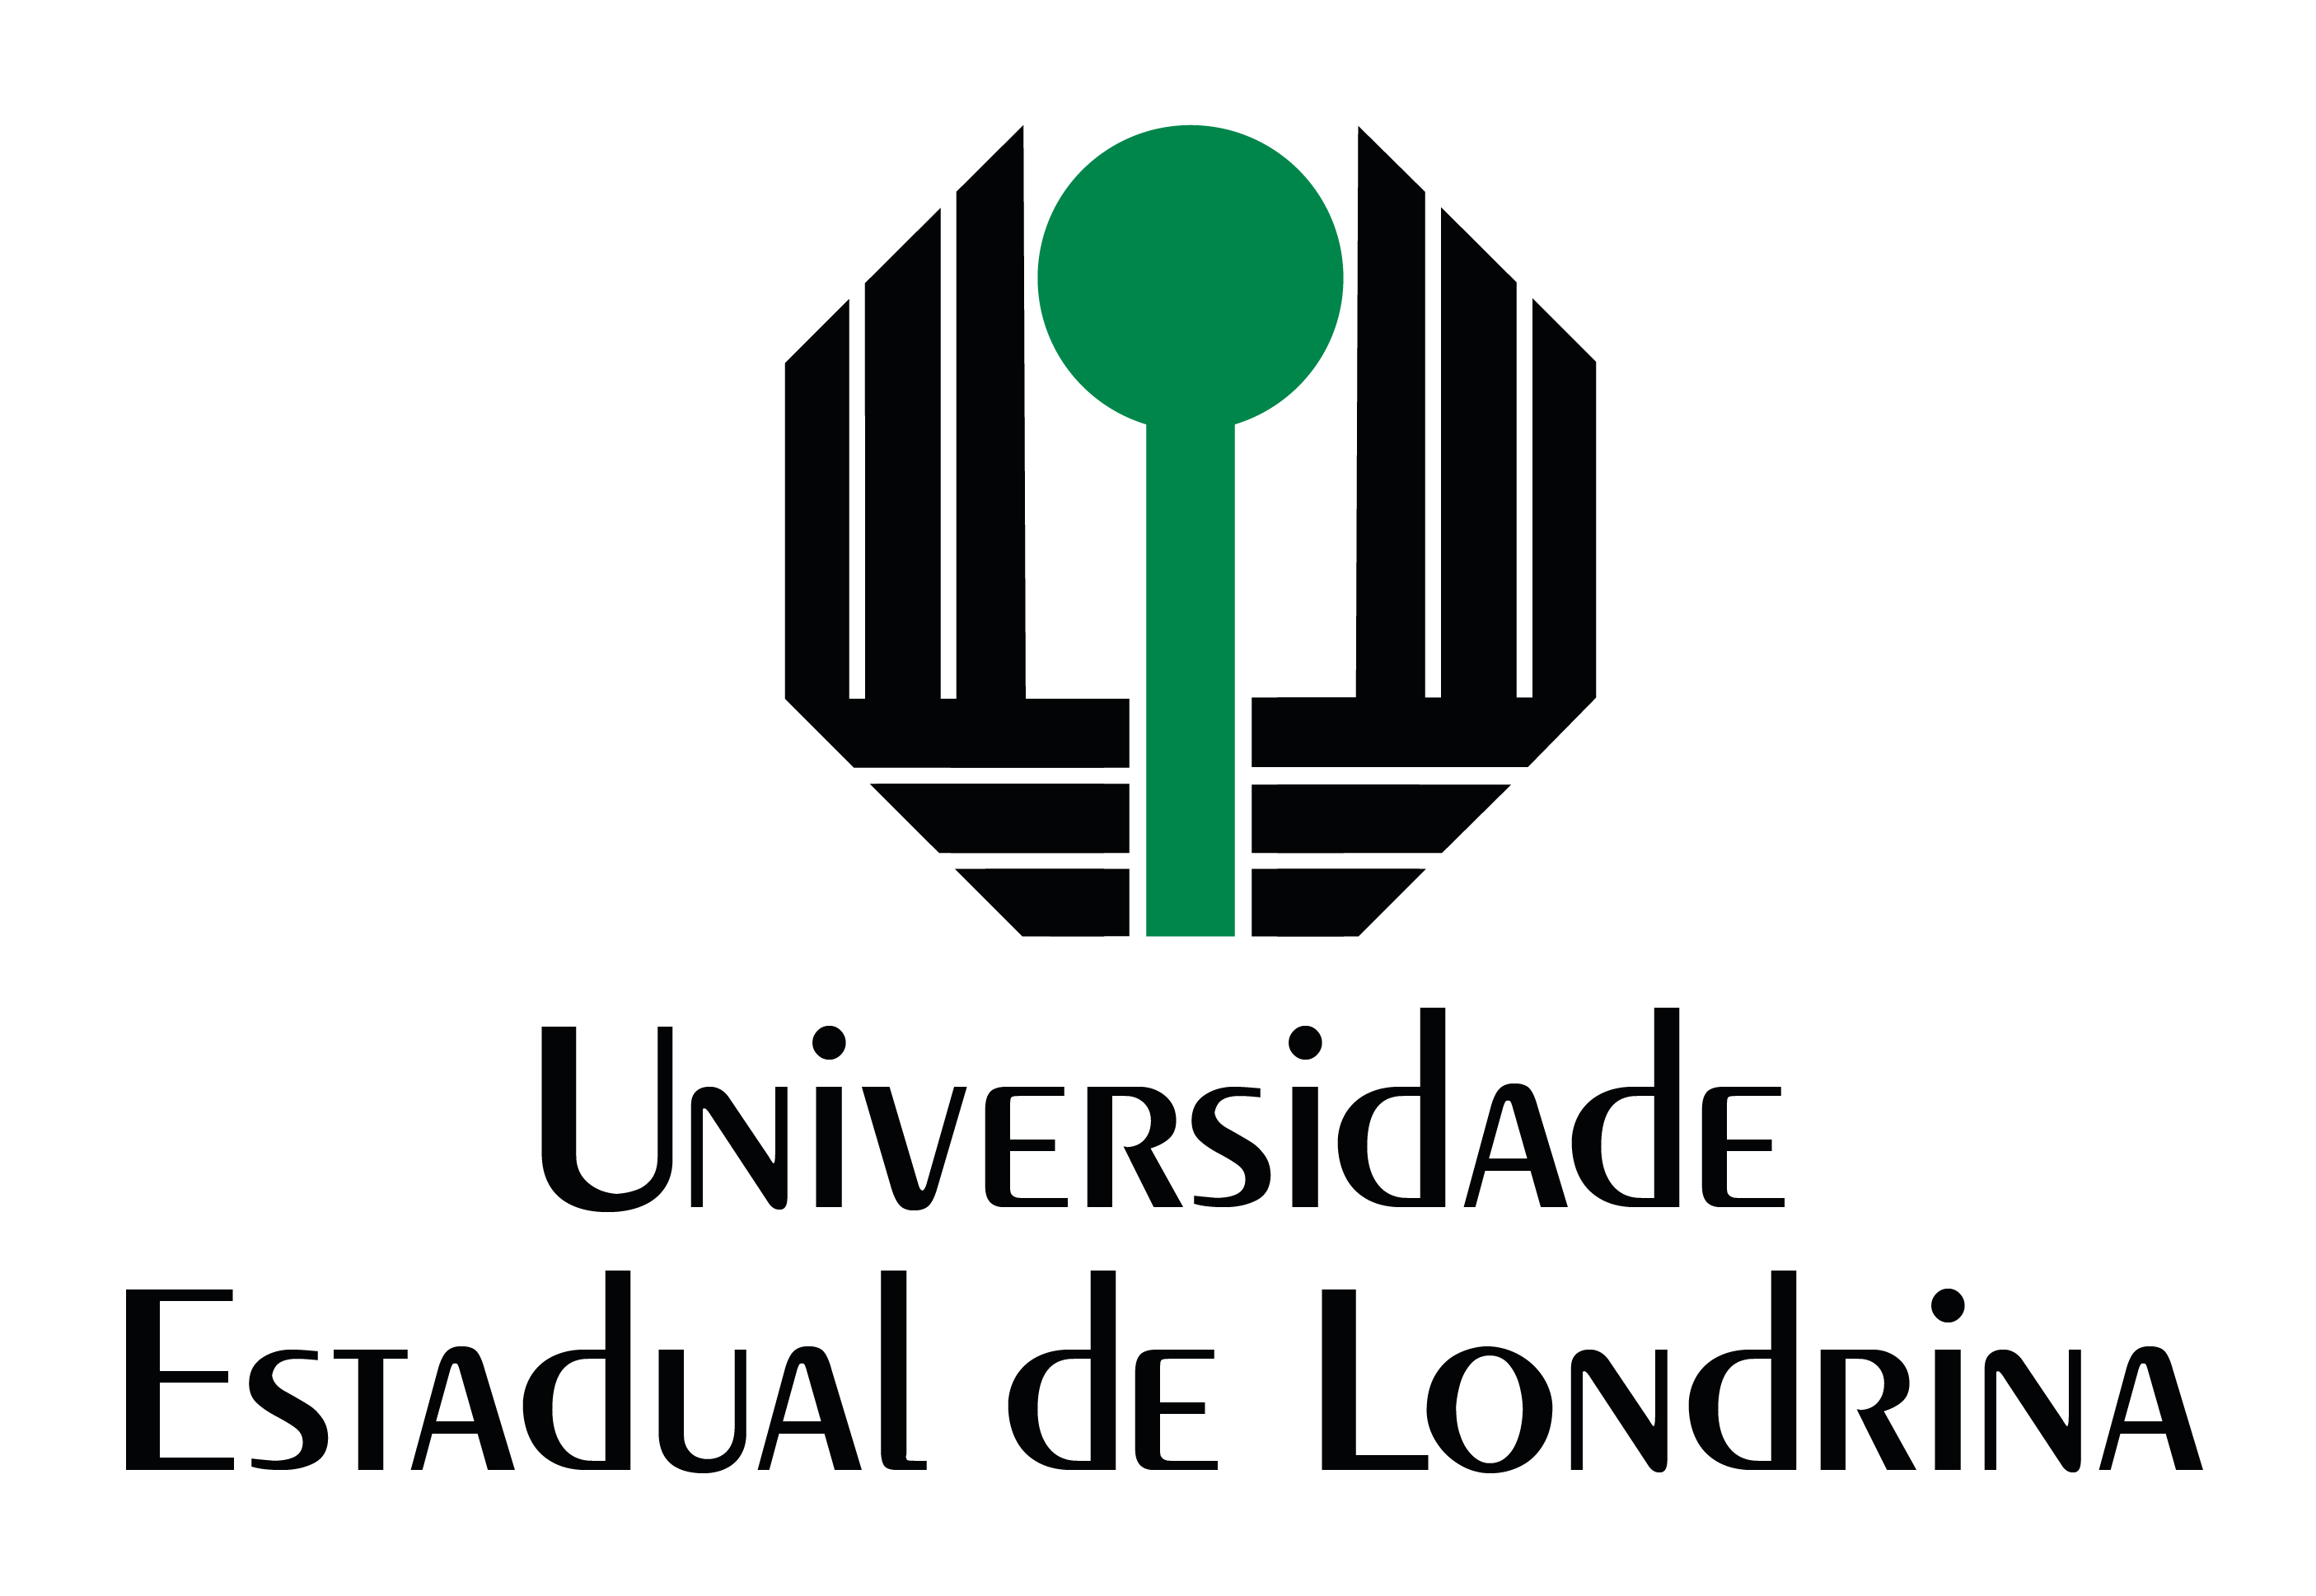 Universidade Estadual de Londrina (UEL)